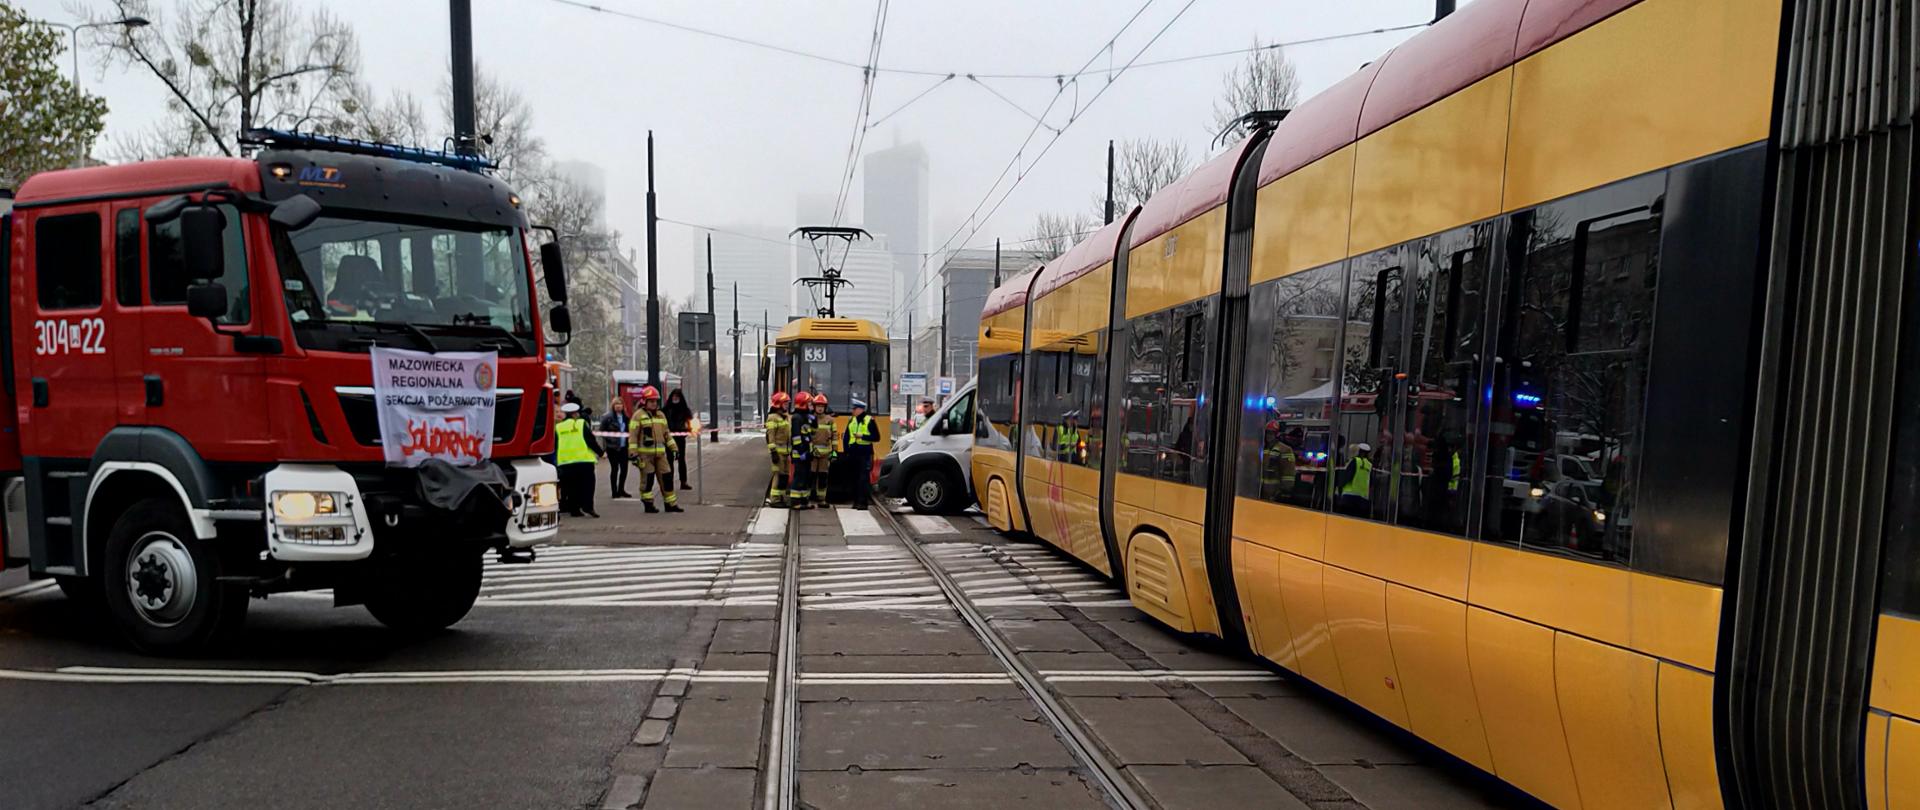 Służby na miejscu wypadku, widoczny wóz strażacki i dwa tramwaje